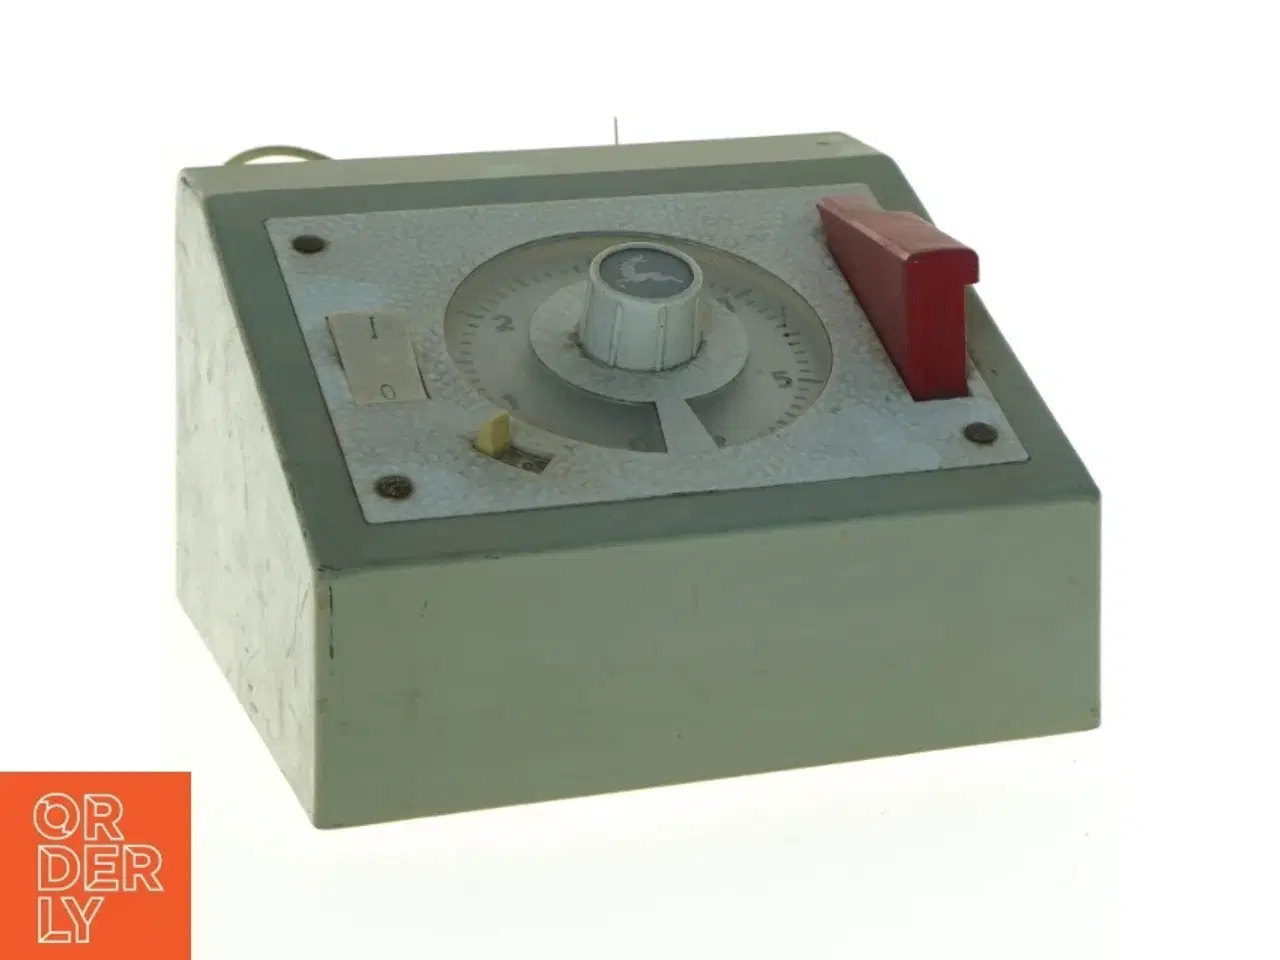 Billede 3 - Vintage tidsindstillet lyssensor (str. 15 x 16 cm)